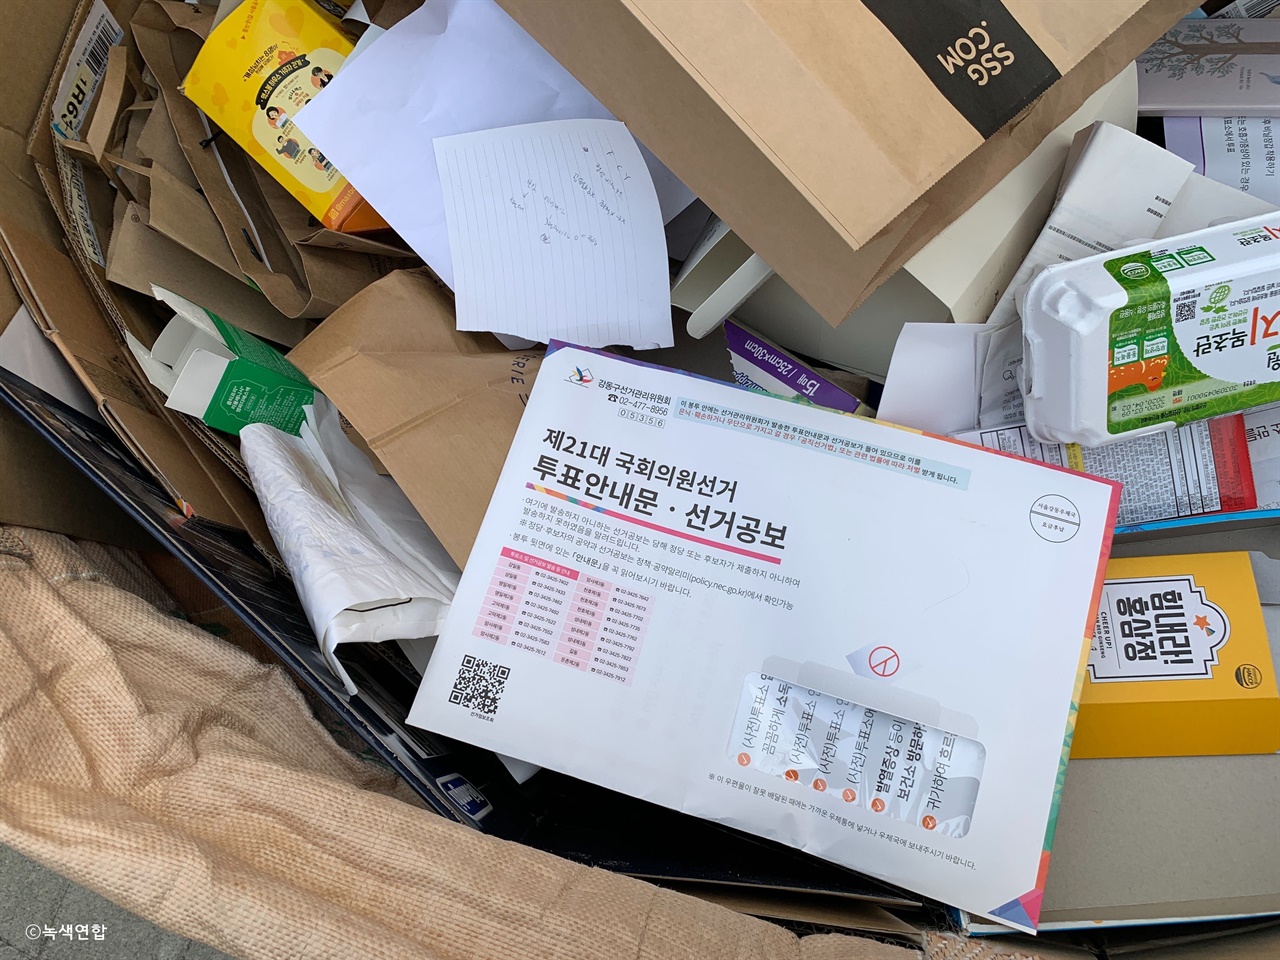 모든 유권자에게 우편발송되는 종이공보물이 쓰레기장에 쌓여있다. 